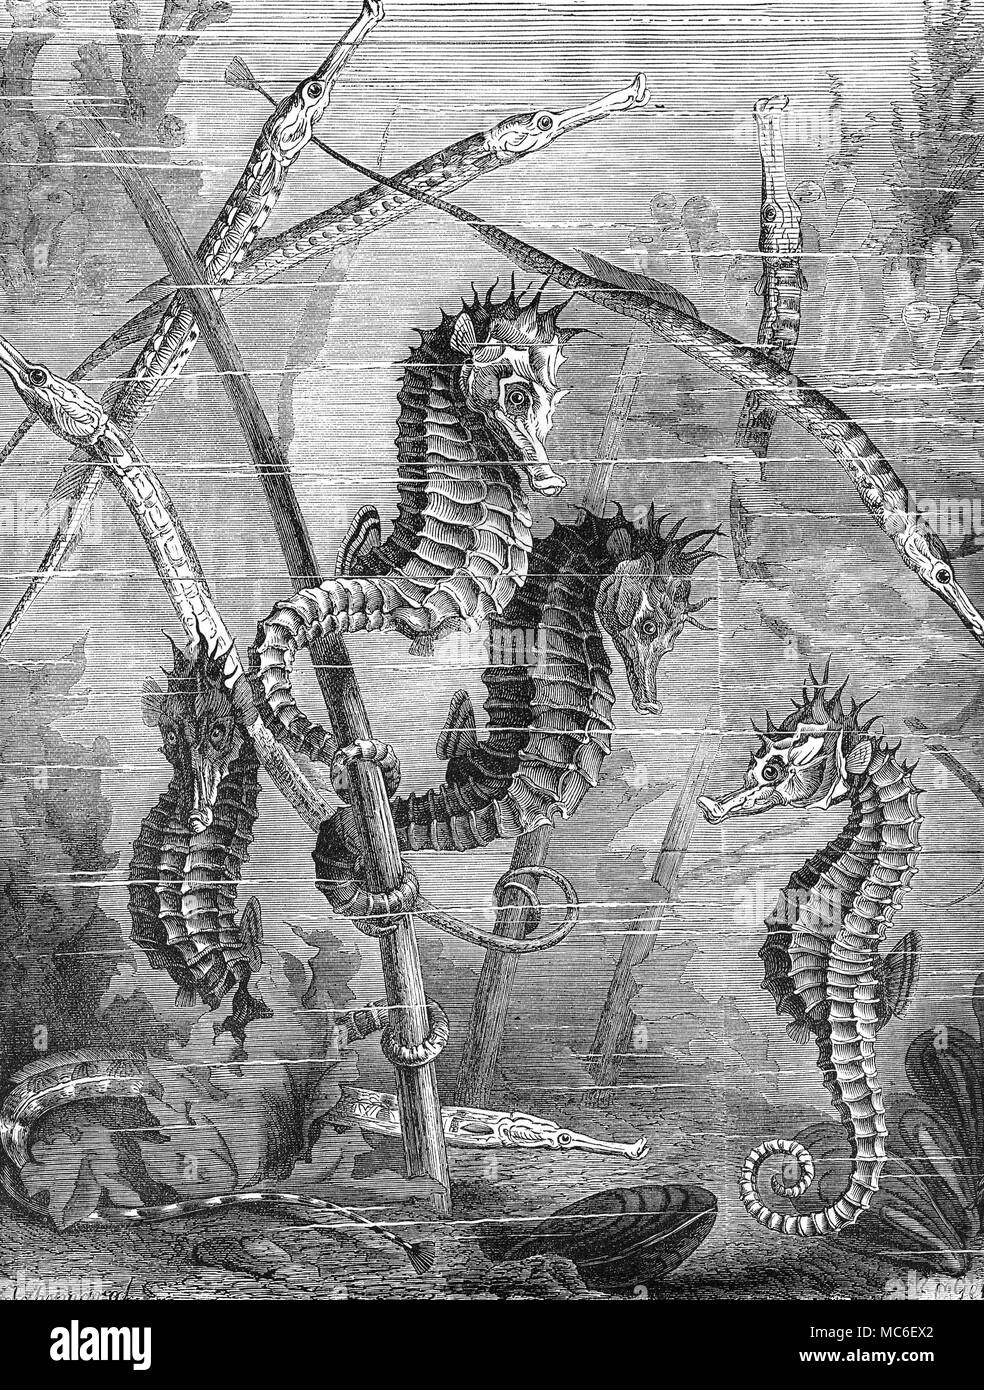 'Monsters monstruos de las Profundidades' - tubo de caballitos de mar y peces. Grabado en madera de circa 1880. Foto de stock